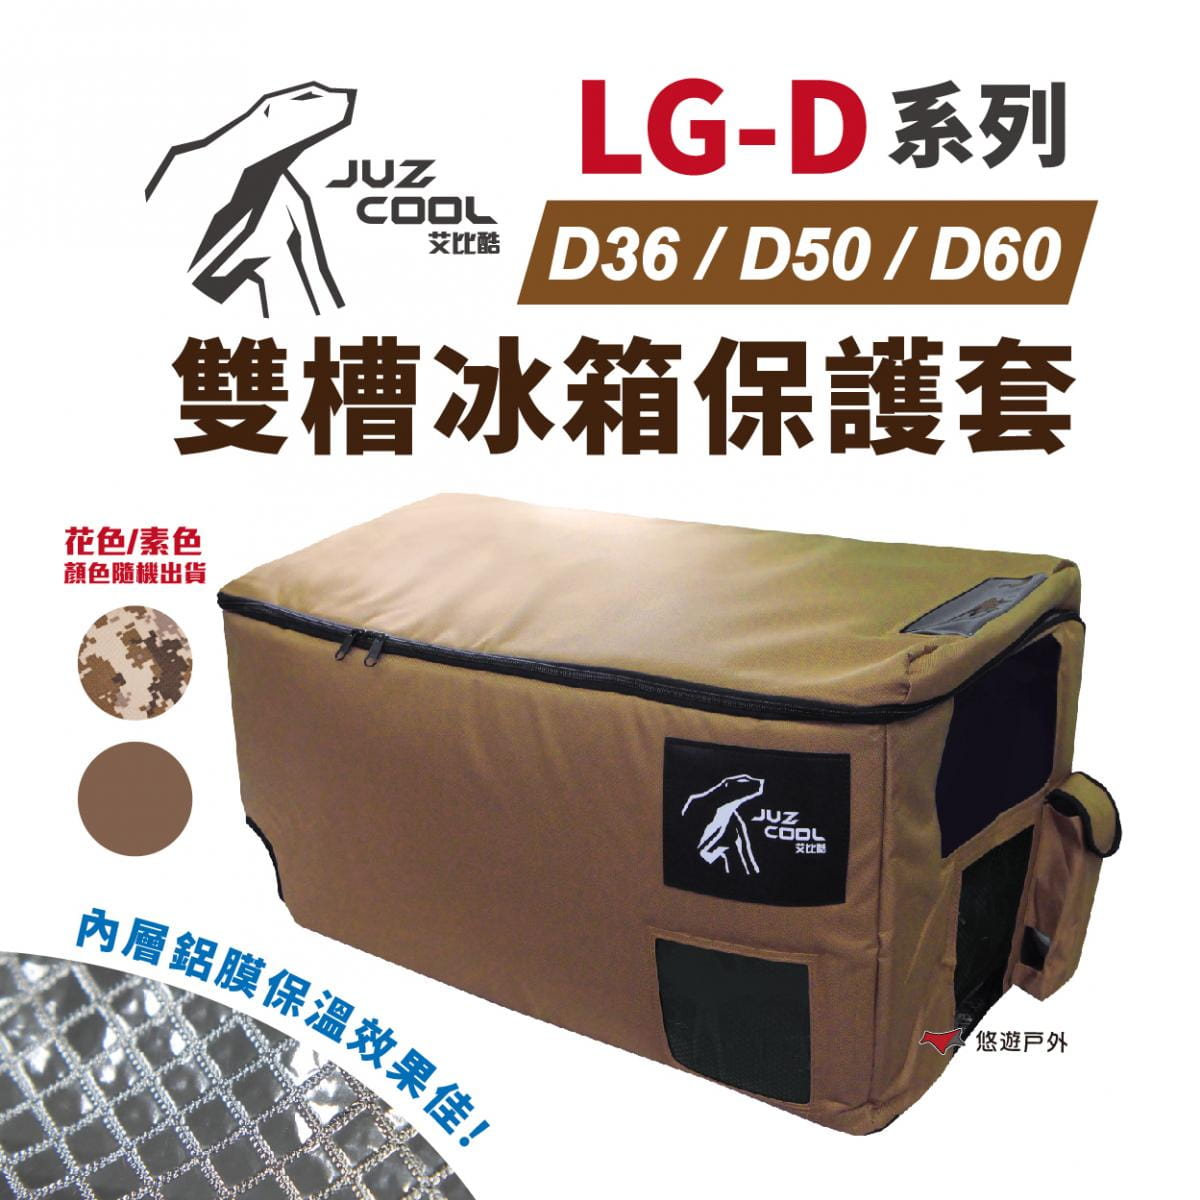 【艾比酷】LG-D系列雙槽冰箱保護套 (悠遊戶外) 1